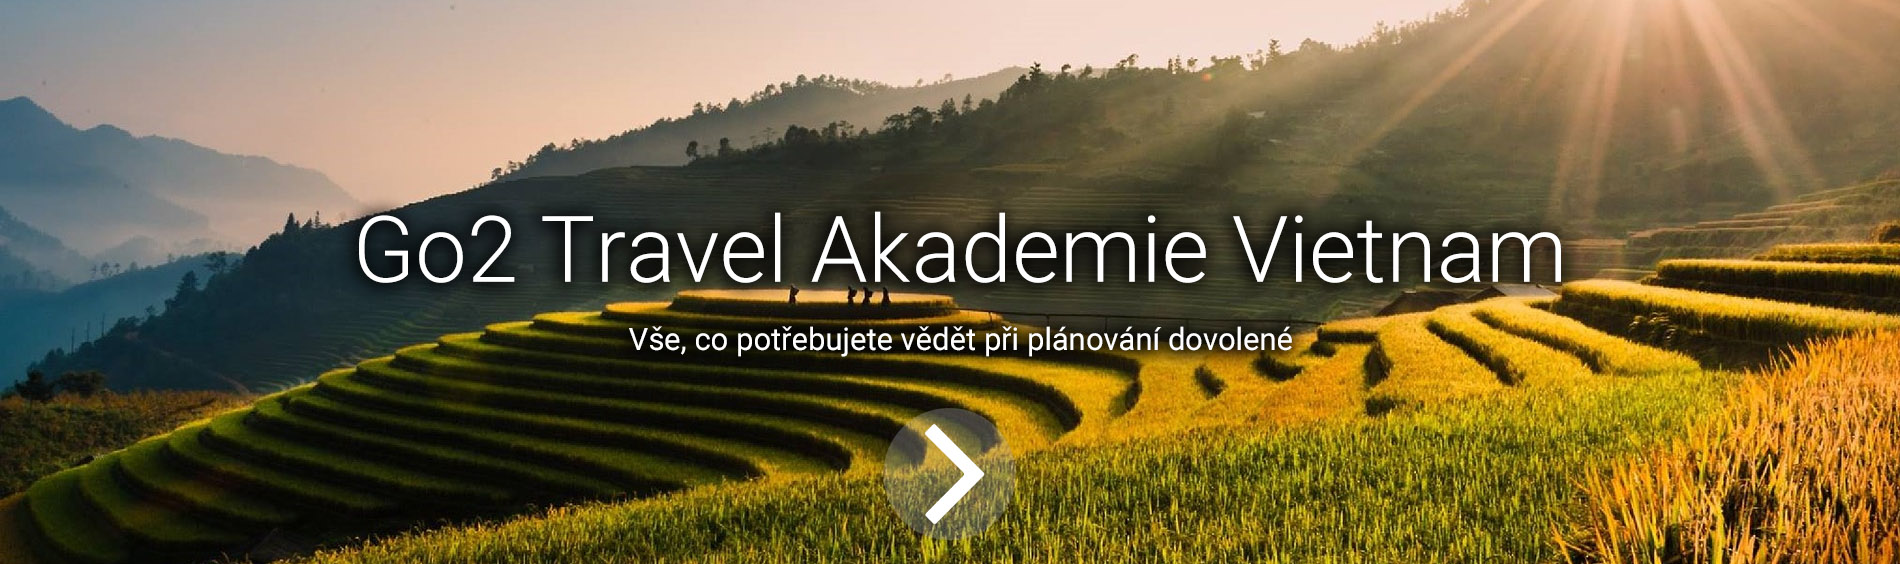 Travel Akademie